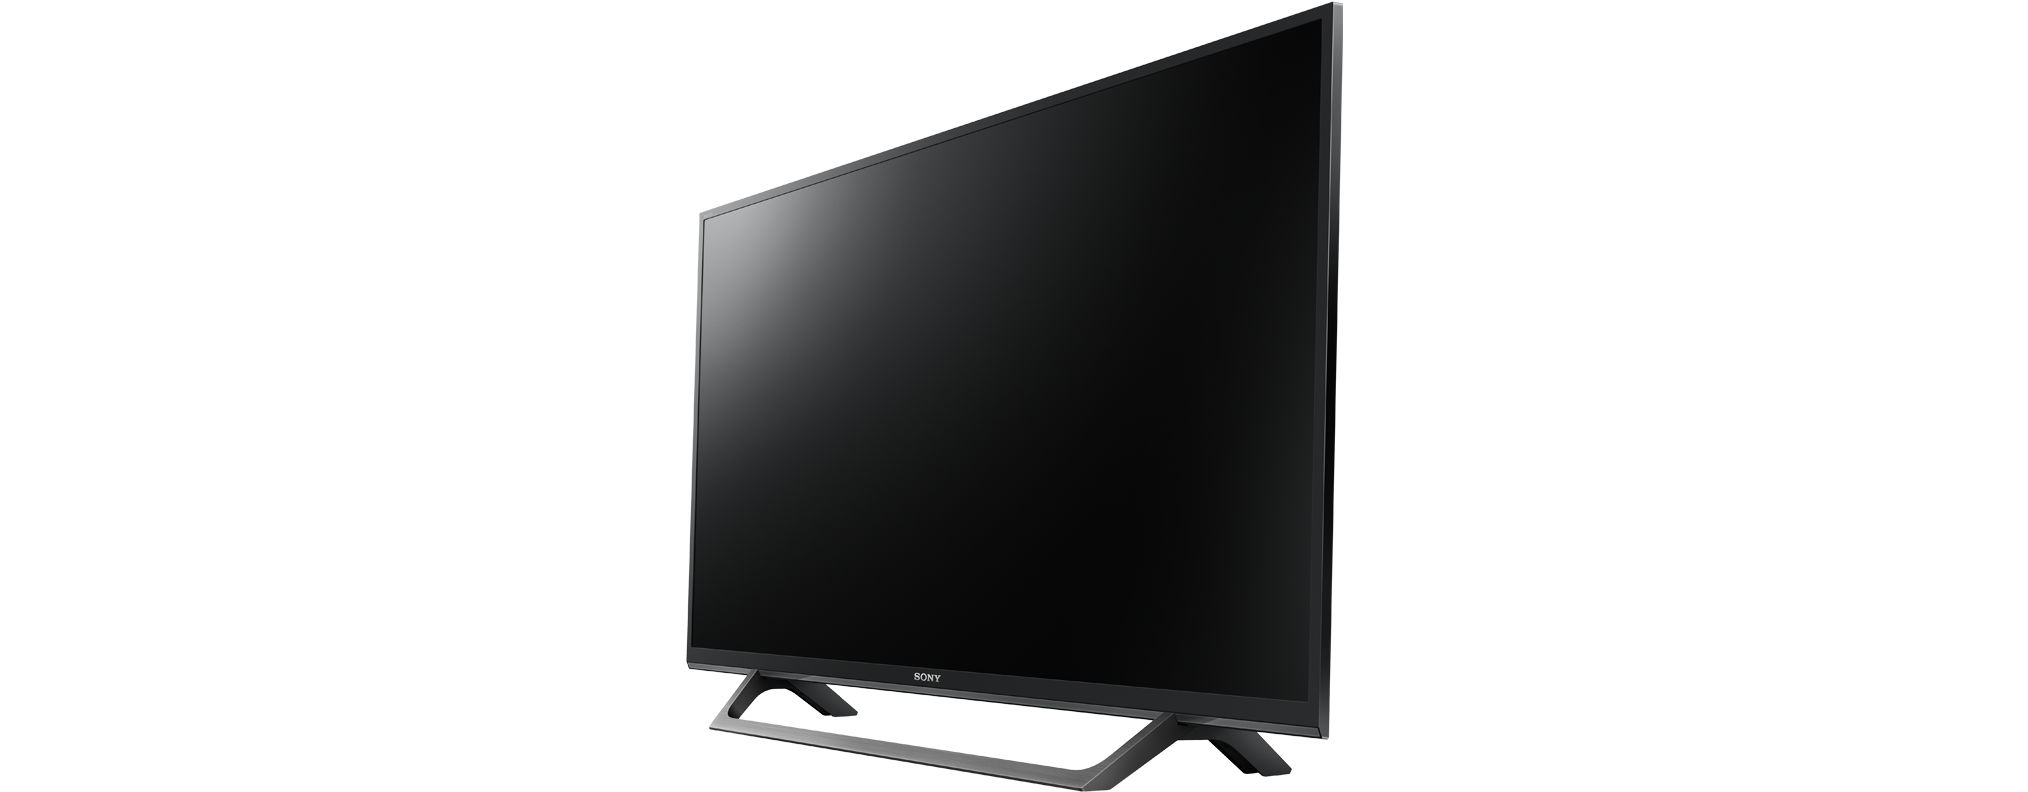 SONY KDL-32W6605 LED cm, Linux) HD-ready, 32 80 Zoll SMART TV, (Flat, / TV